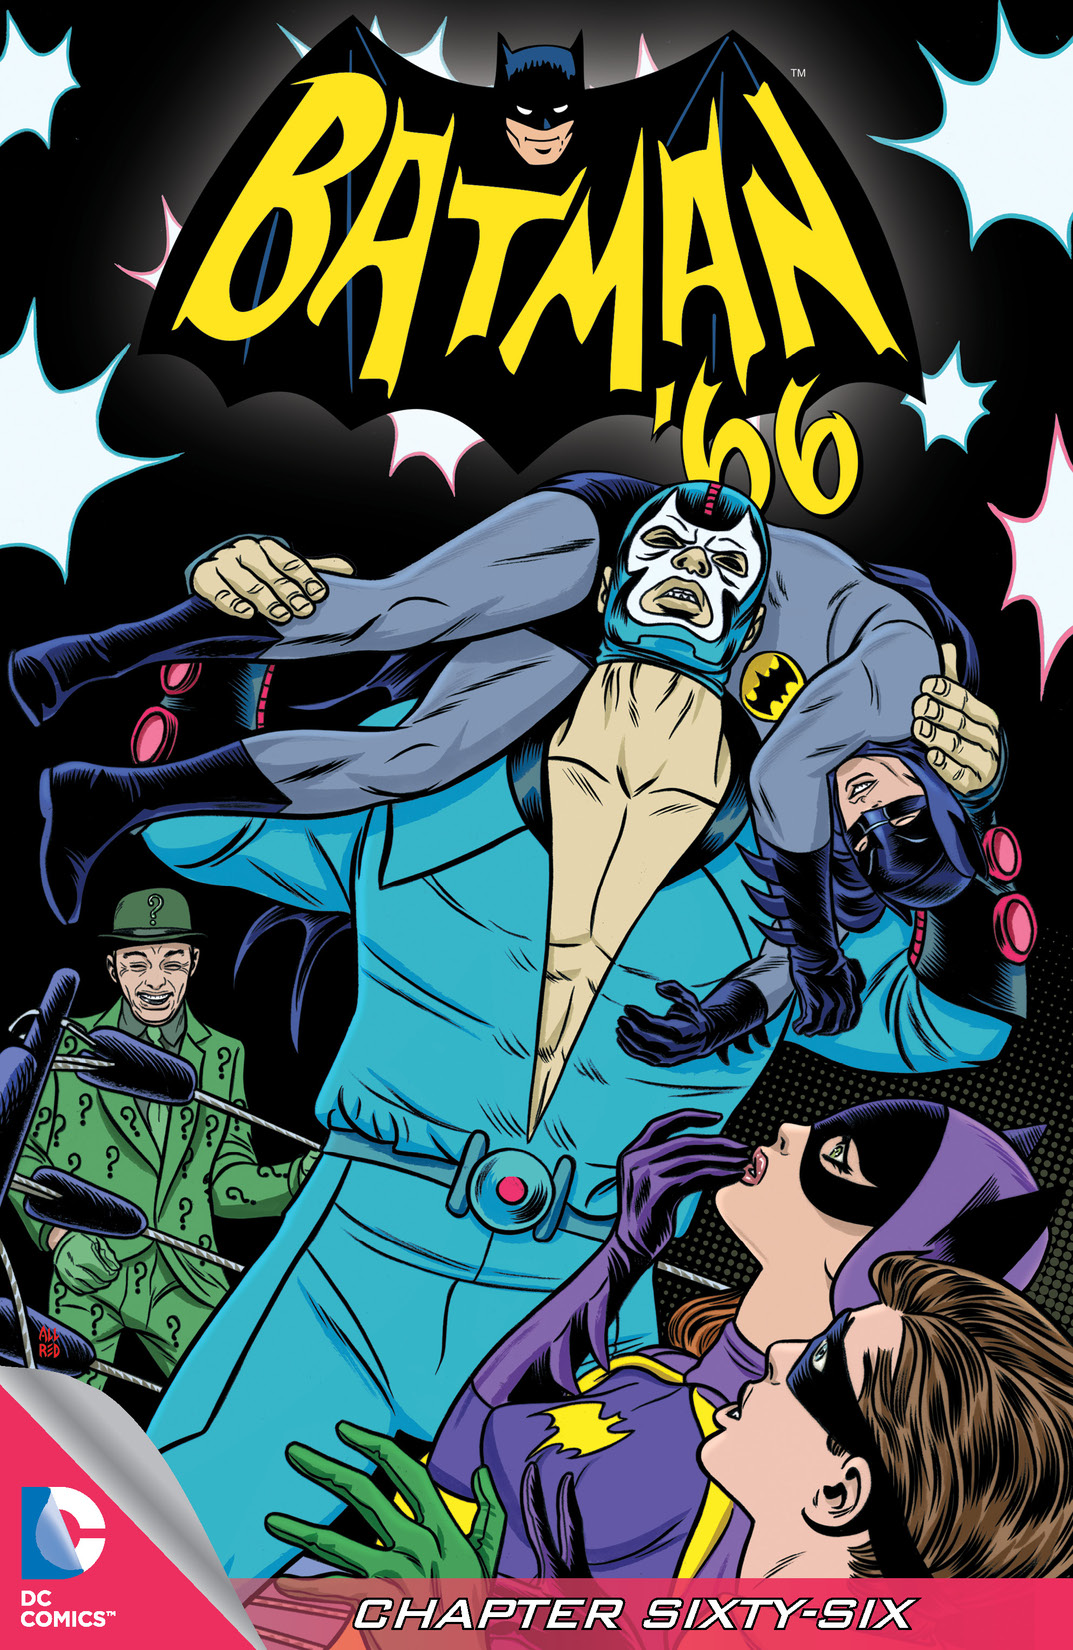 Batman '66 #66 preview images